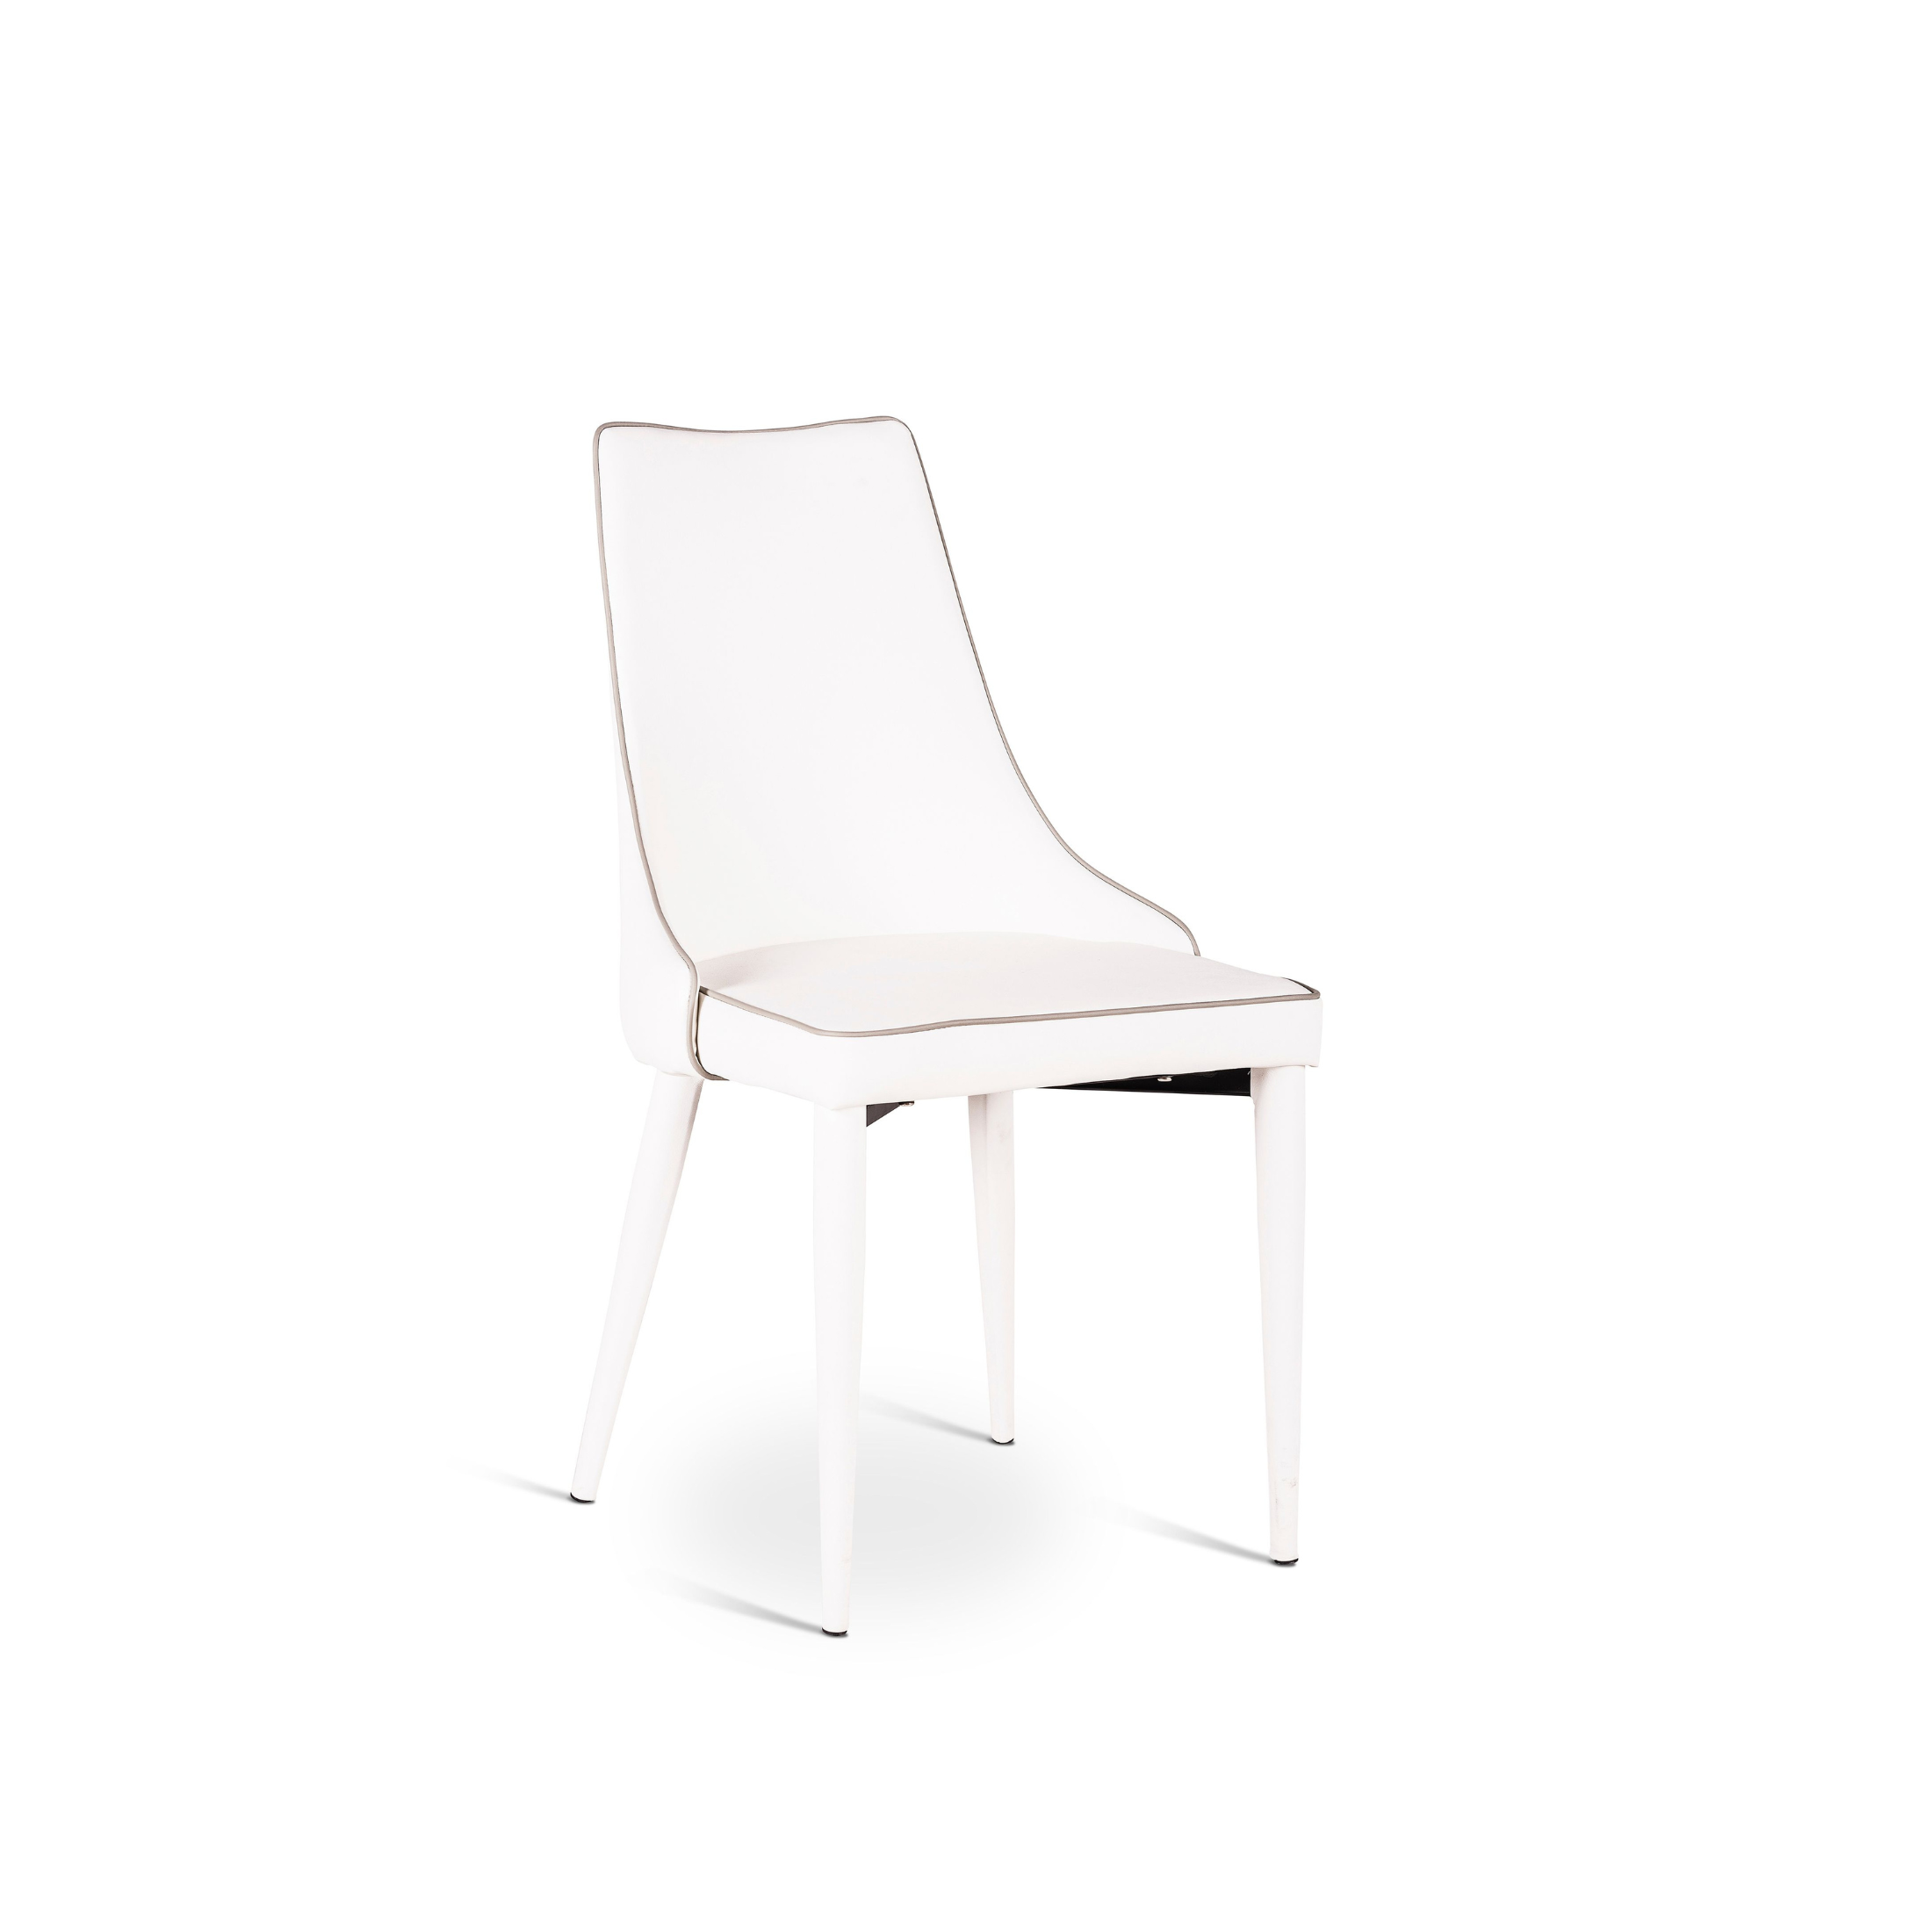 Chaise rembourrée simili cuir "Myriam" fauteuil moderne 46x46 cm 91h